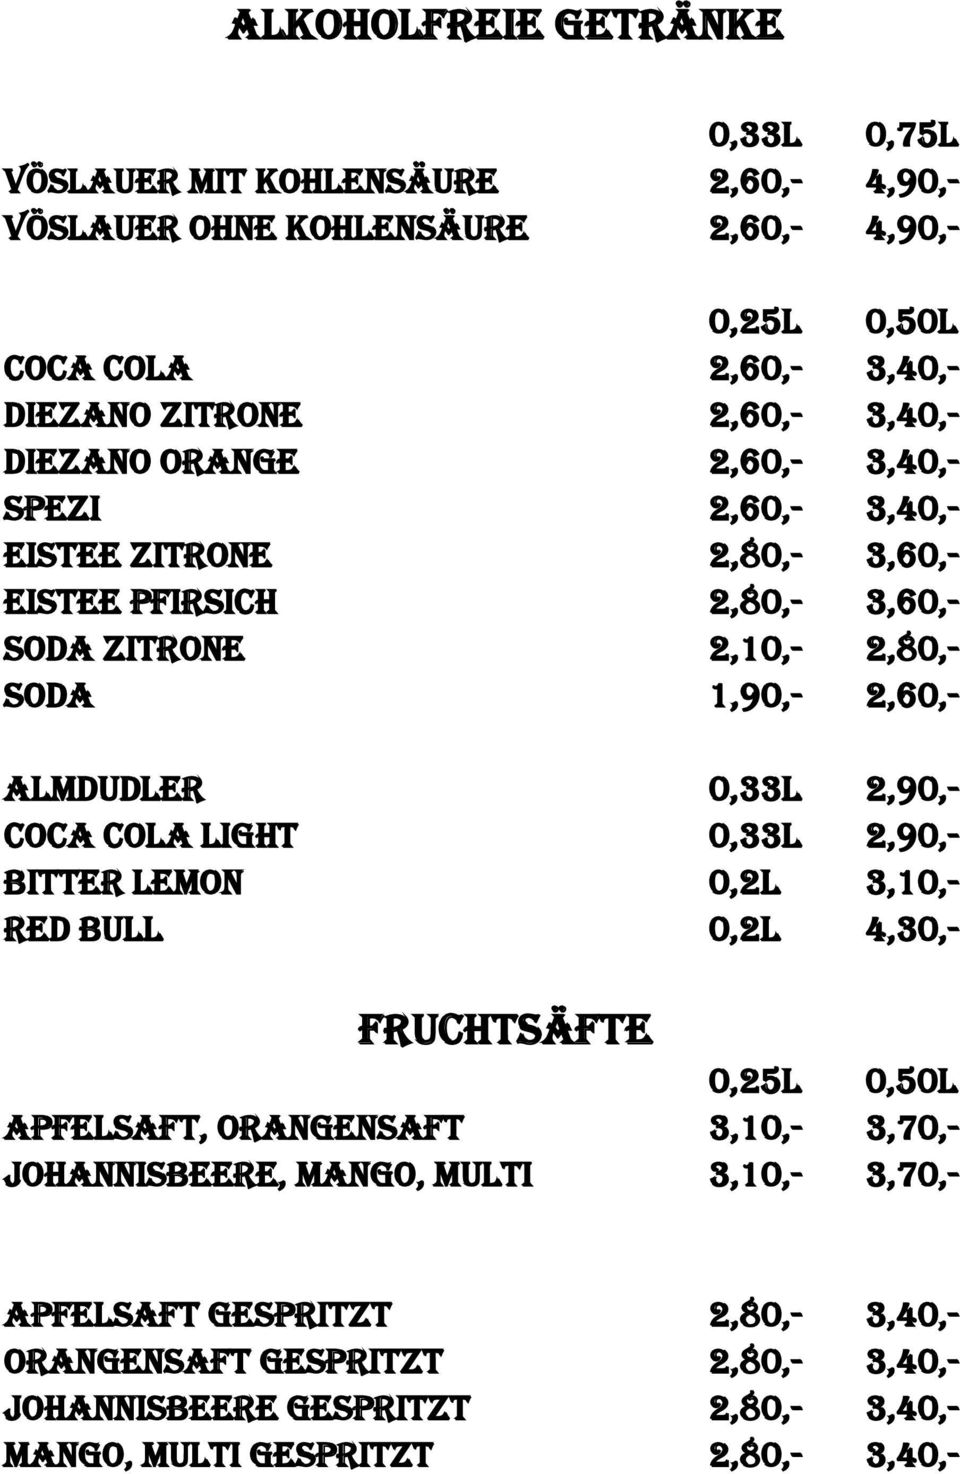 Almdudler 0,33l 2,90,- Coca Cola light 0,33l 2,90,- Bitter Lemon 0,2l 3,10,- Red Bull 0,2l 4,30,- Fruchtsäfte 0,25l 0,50l Apfelsaft, Orangensaft 3,10,- 3,70,-